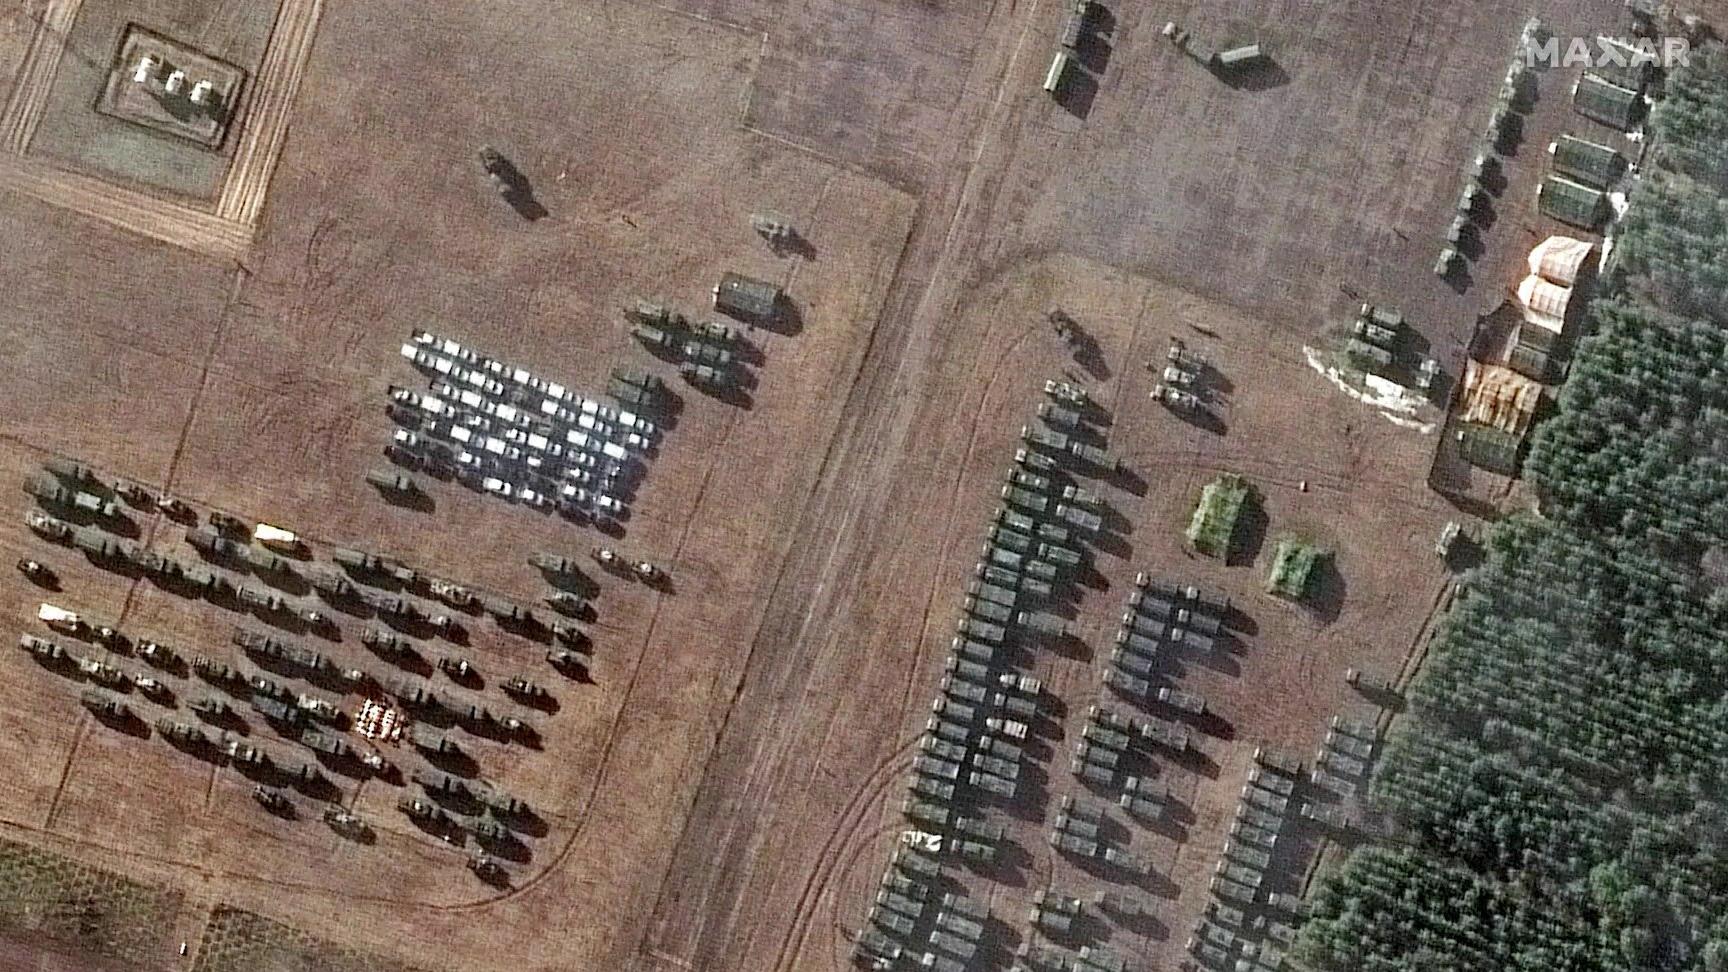 Bilder eines russischen Militärlagers in Belarus, nahe der ukrainischen Grenze